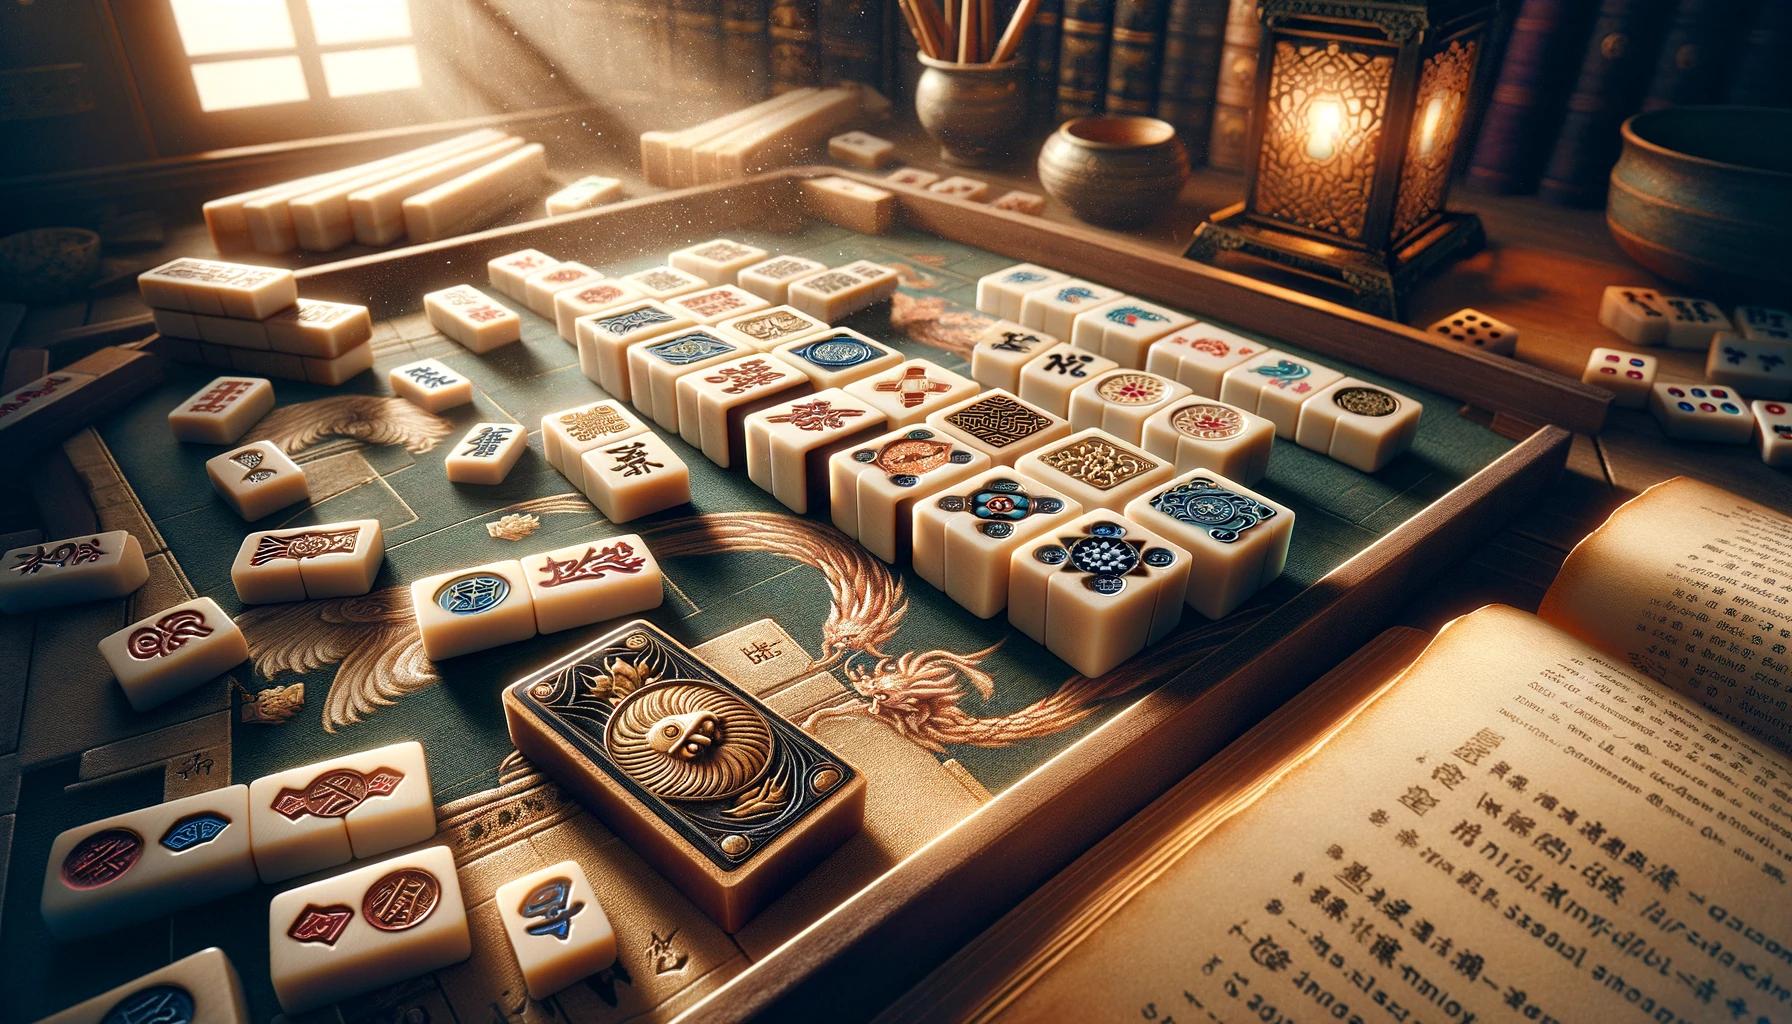 Alles über Mahjong: Updates, Ereignisse, Anleitungen, Tipps und interessante Fakten.